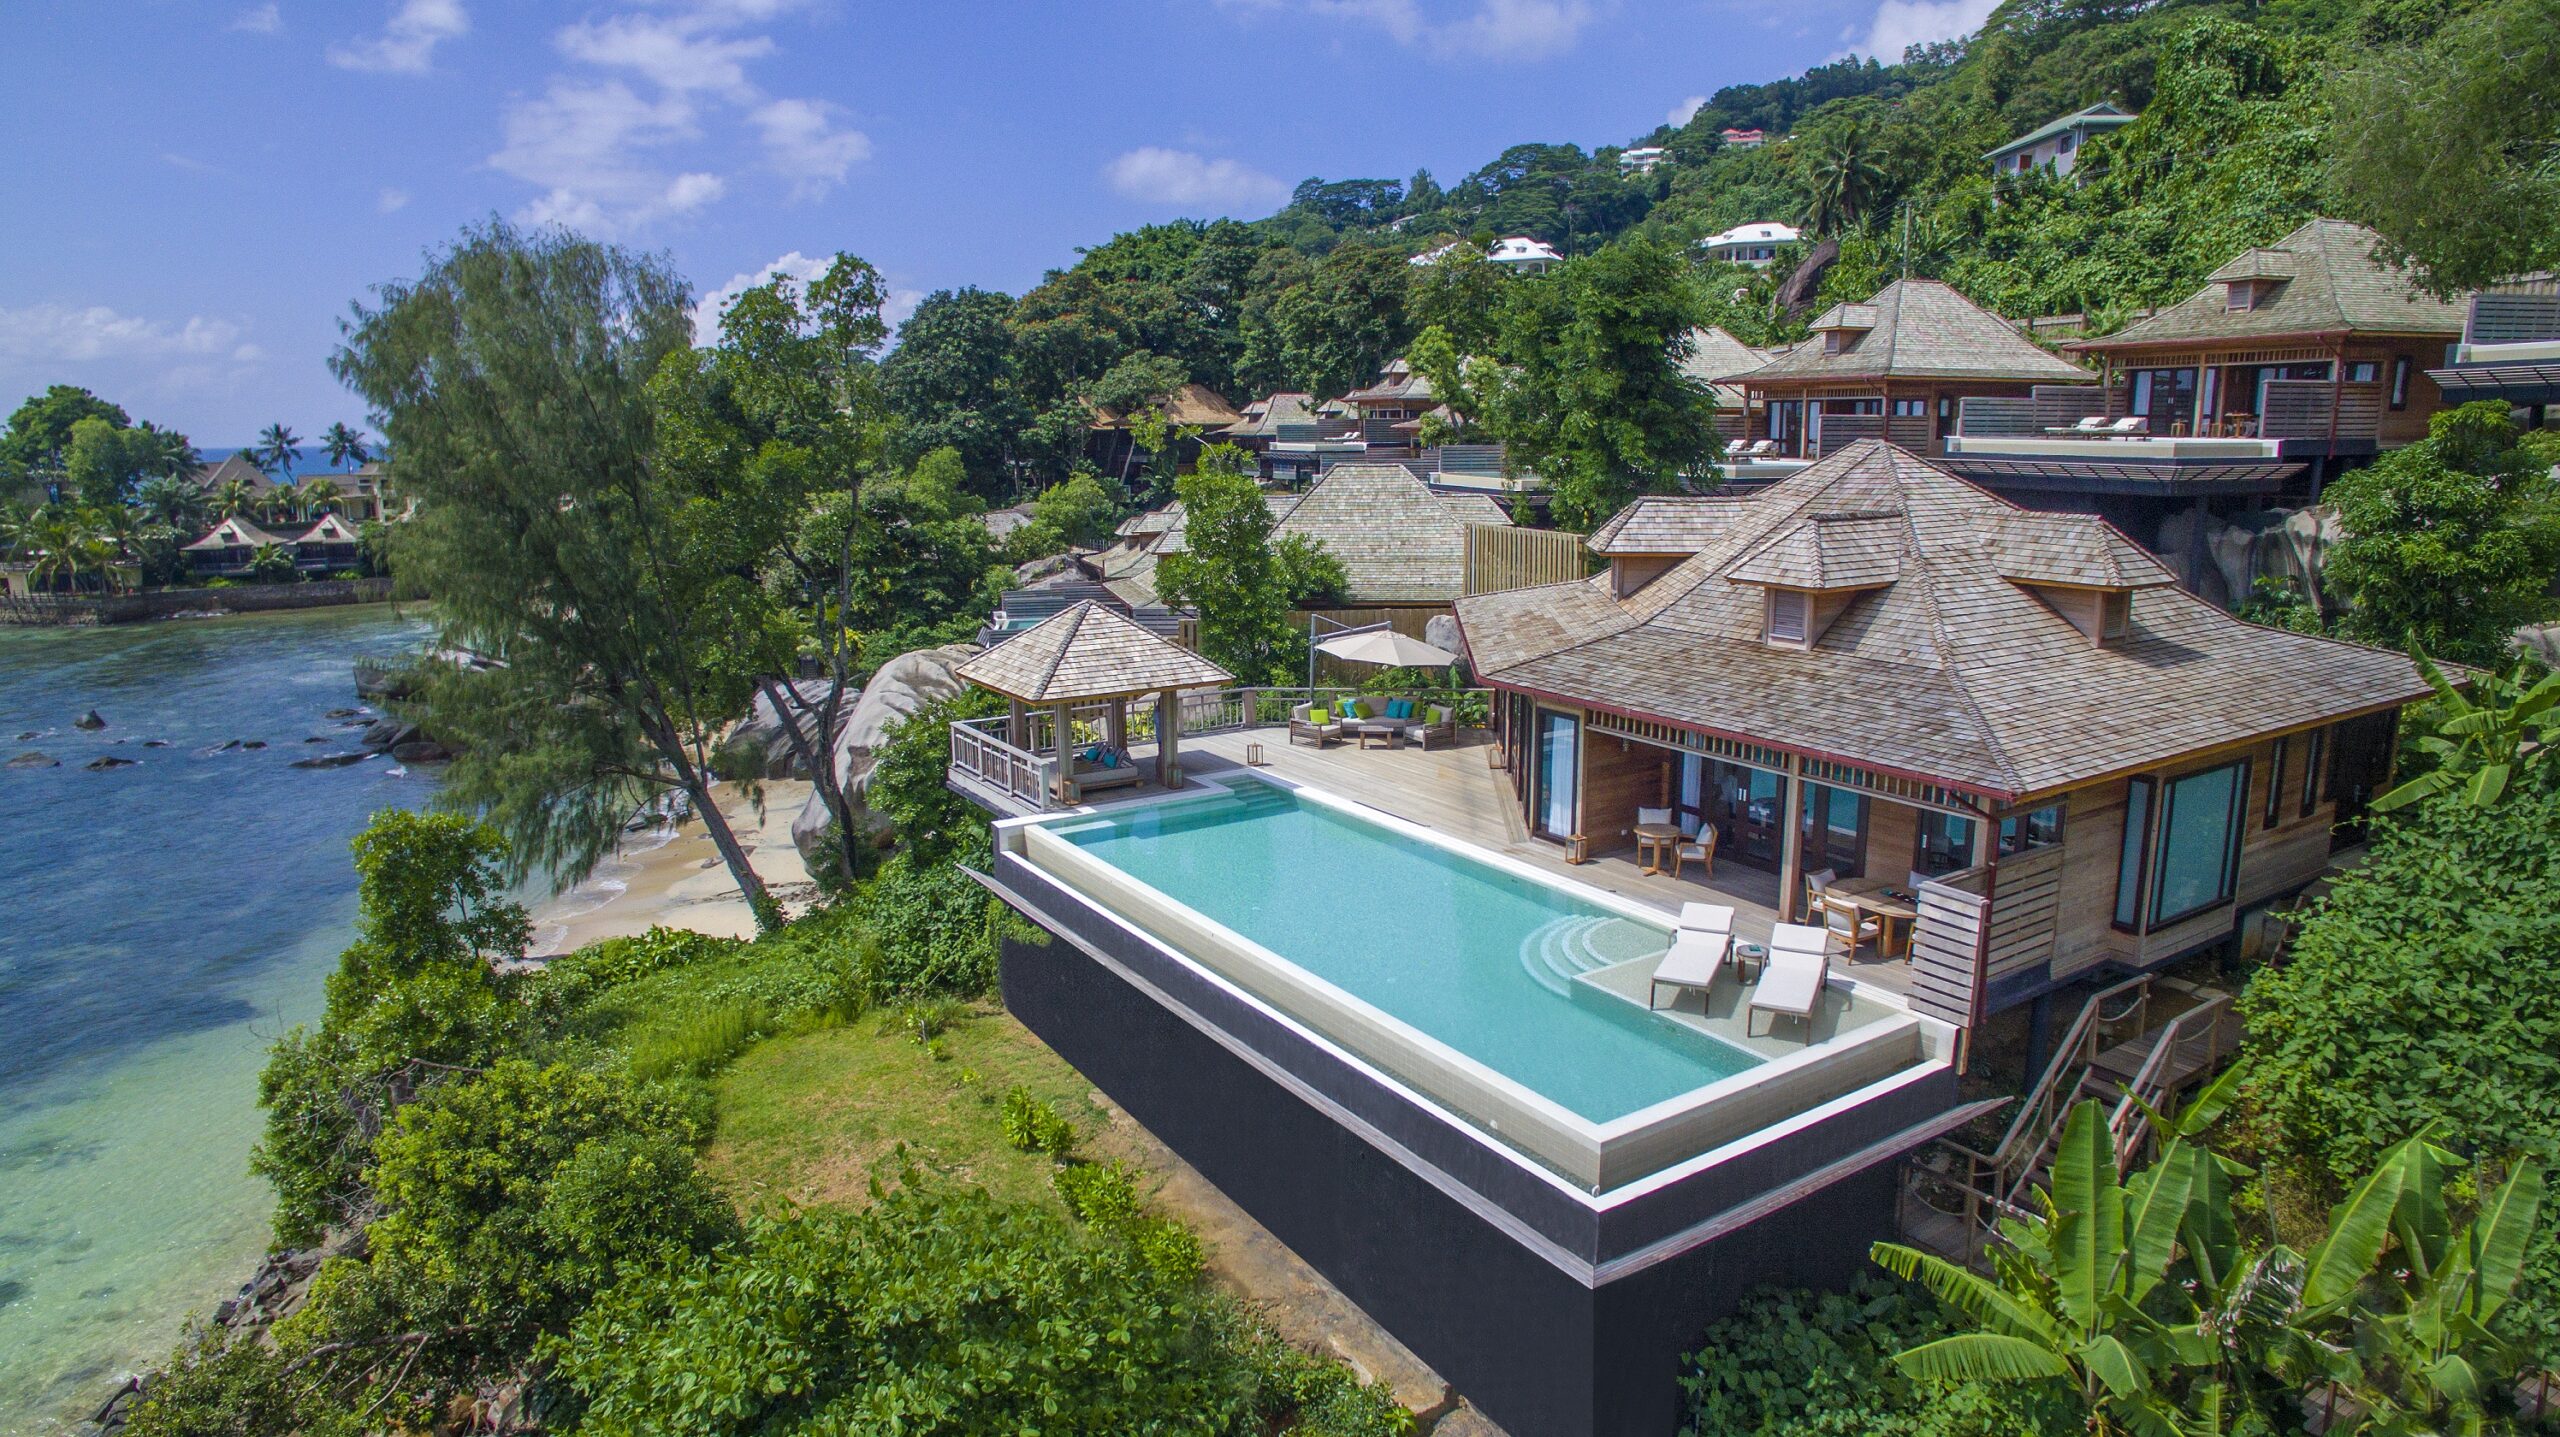 Vue aérienne d'une villa de type créole d'un hôtel Hilton aux Seychelles, avec une grande piscine privée, des transats, une végétation tropicale, au bord de l'océan Indien